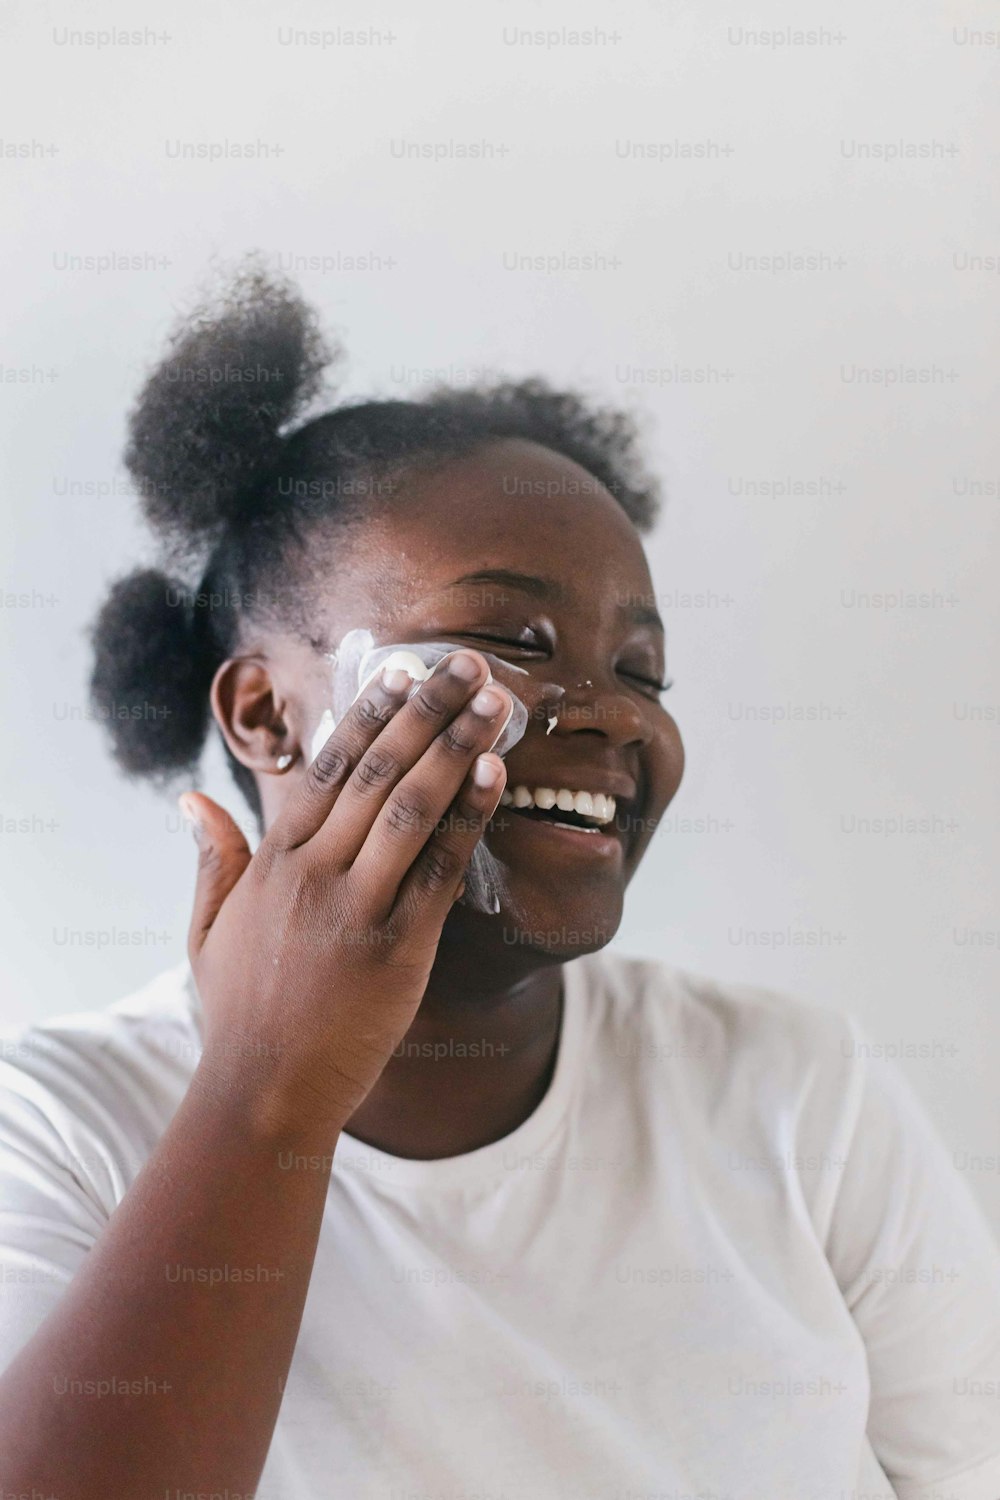 Una mujer sonríe mientras se limpia la cara con un paño